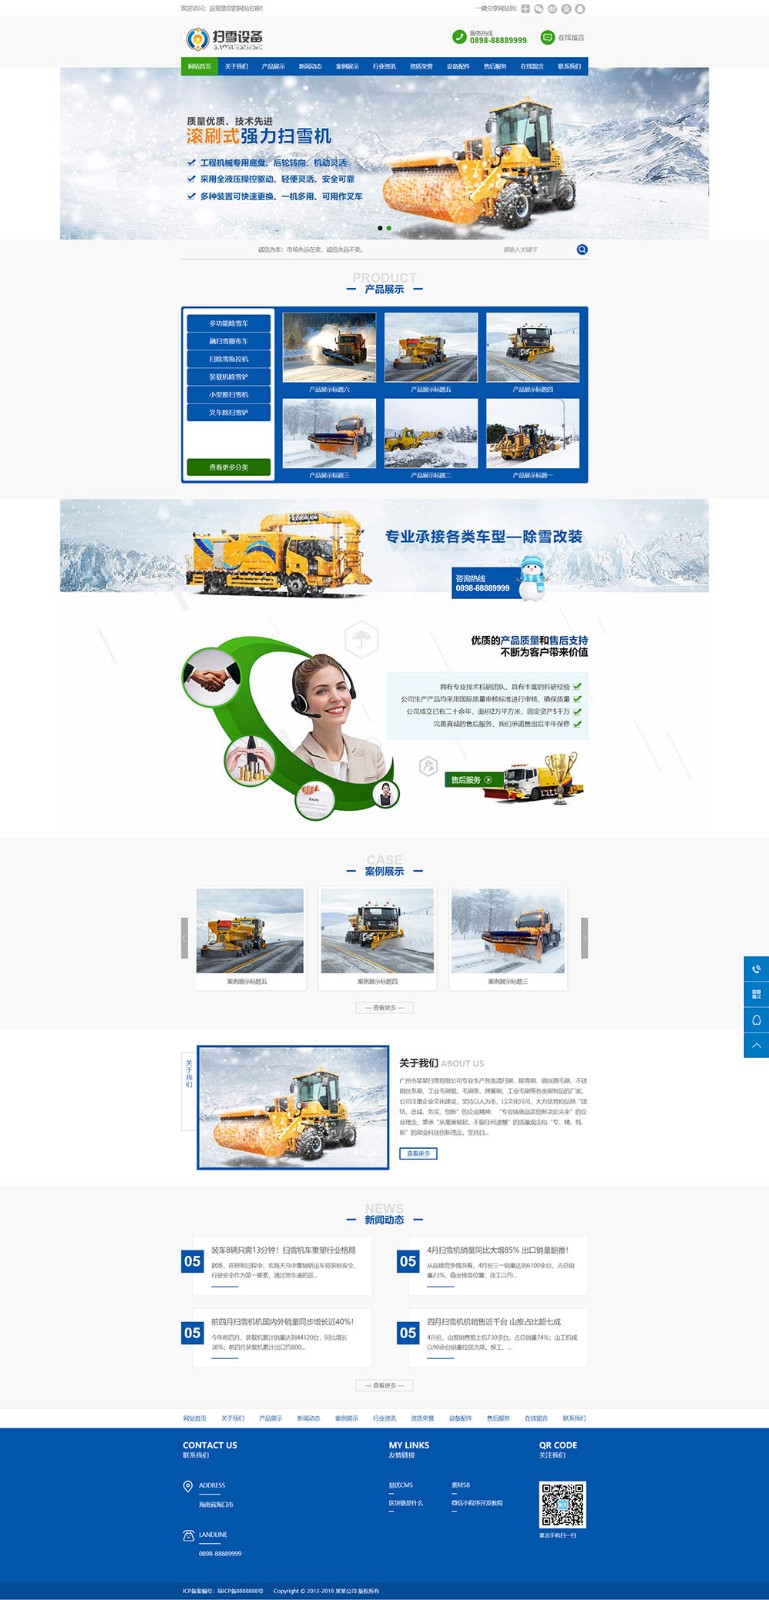 570机械扫雪设备类网站模板.jpg